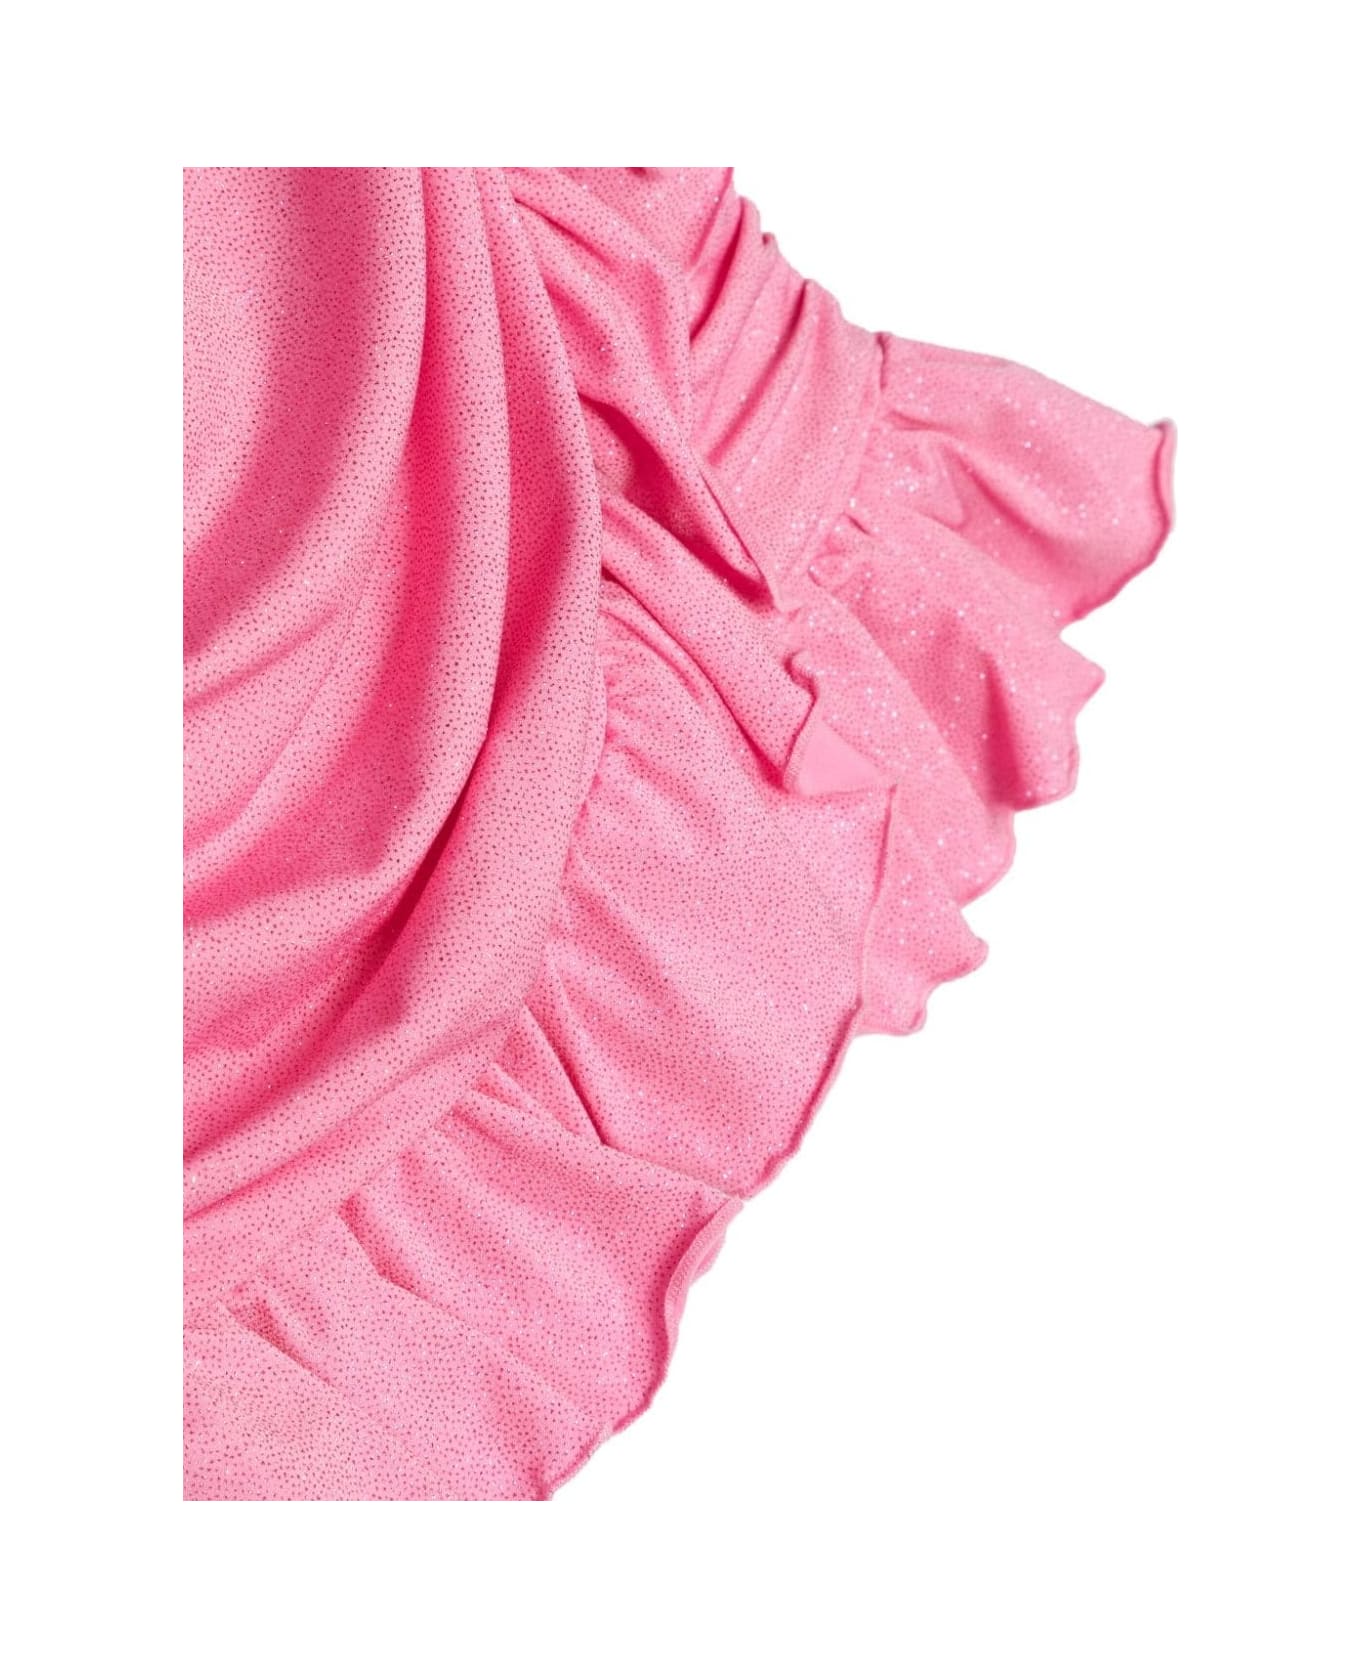 Miss Blumarine Pink Glitter Draped Dress - Pink